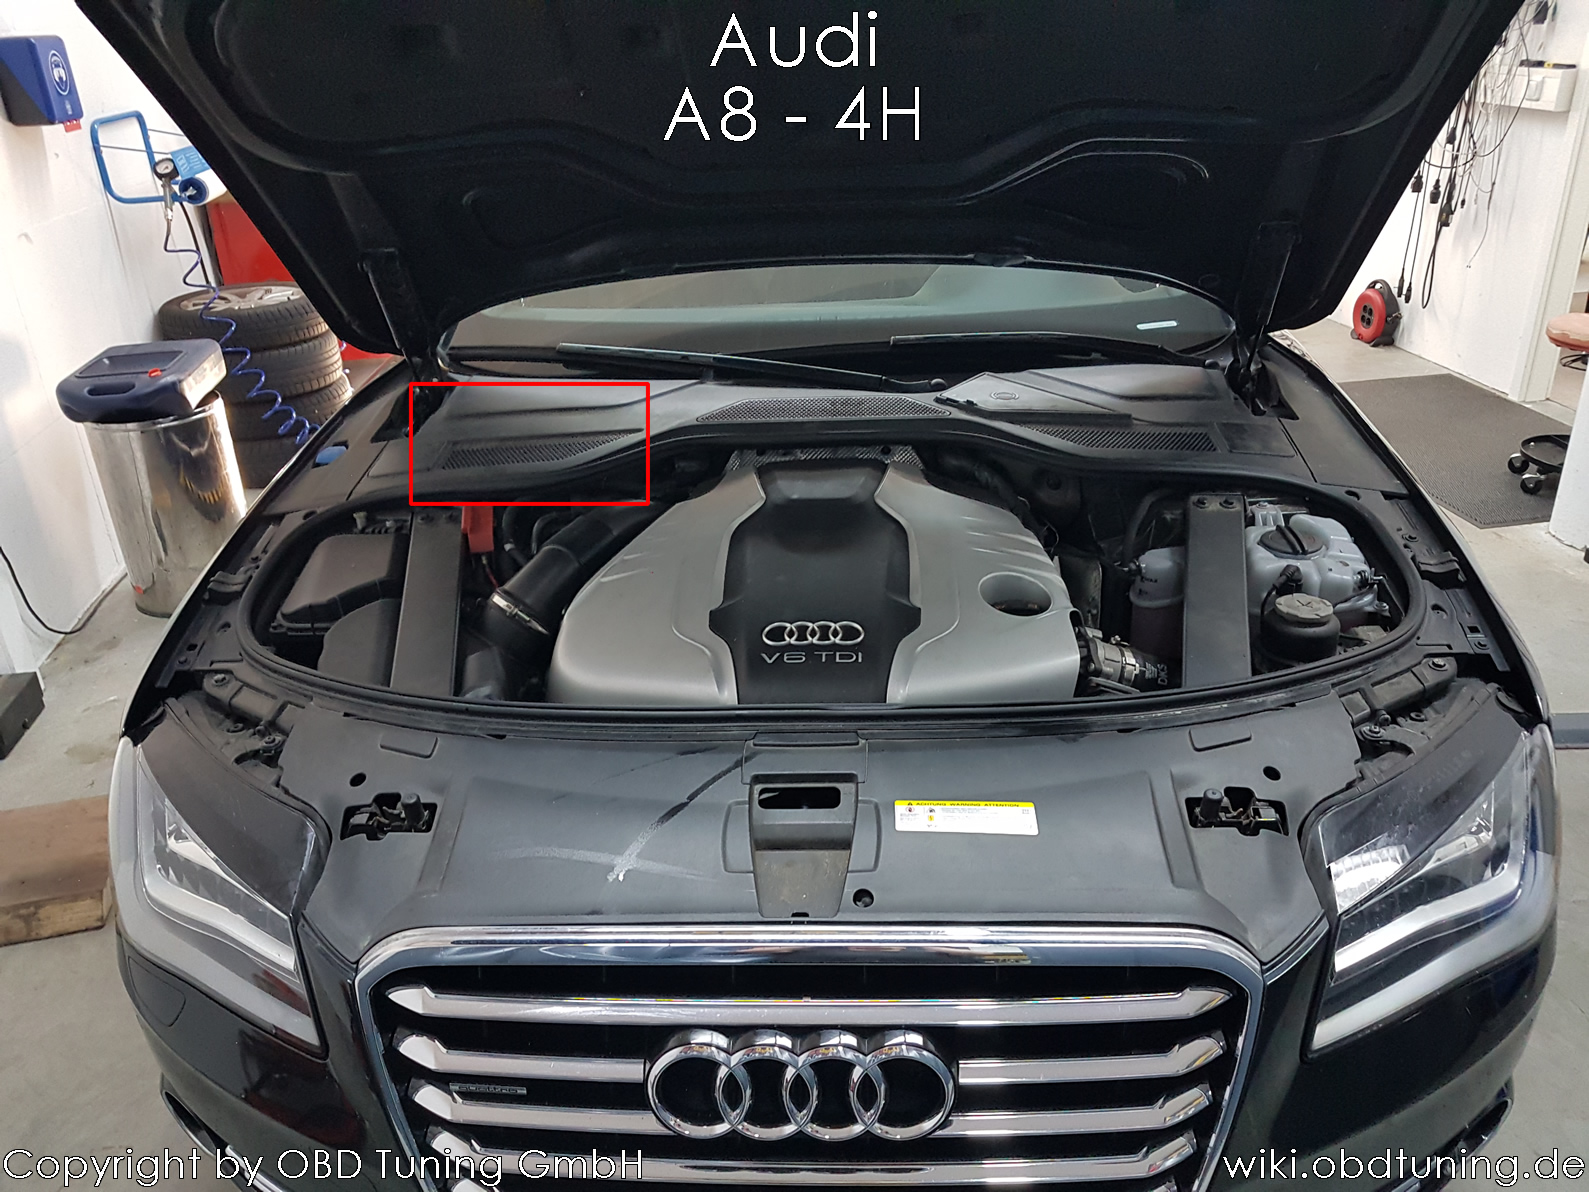 Audi A8 4H ECU.jpg